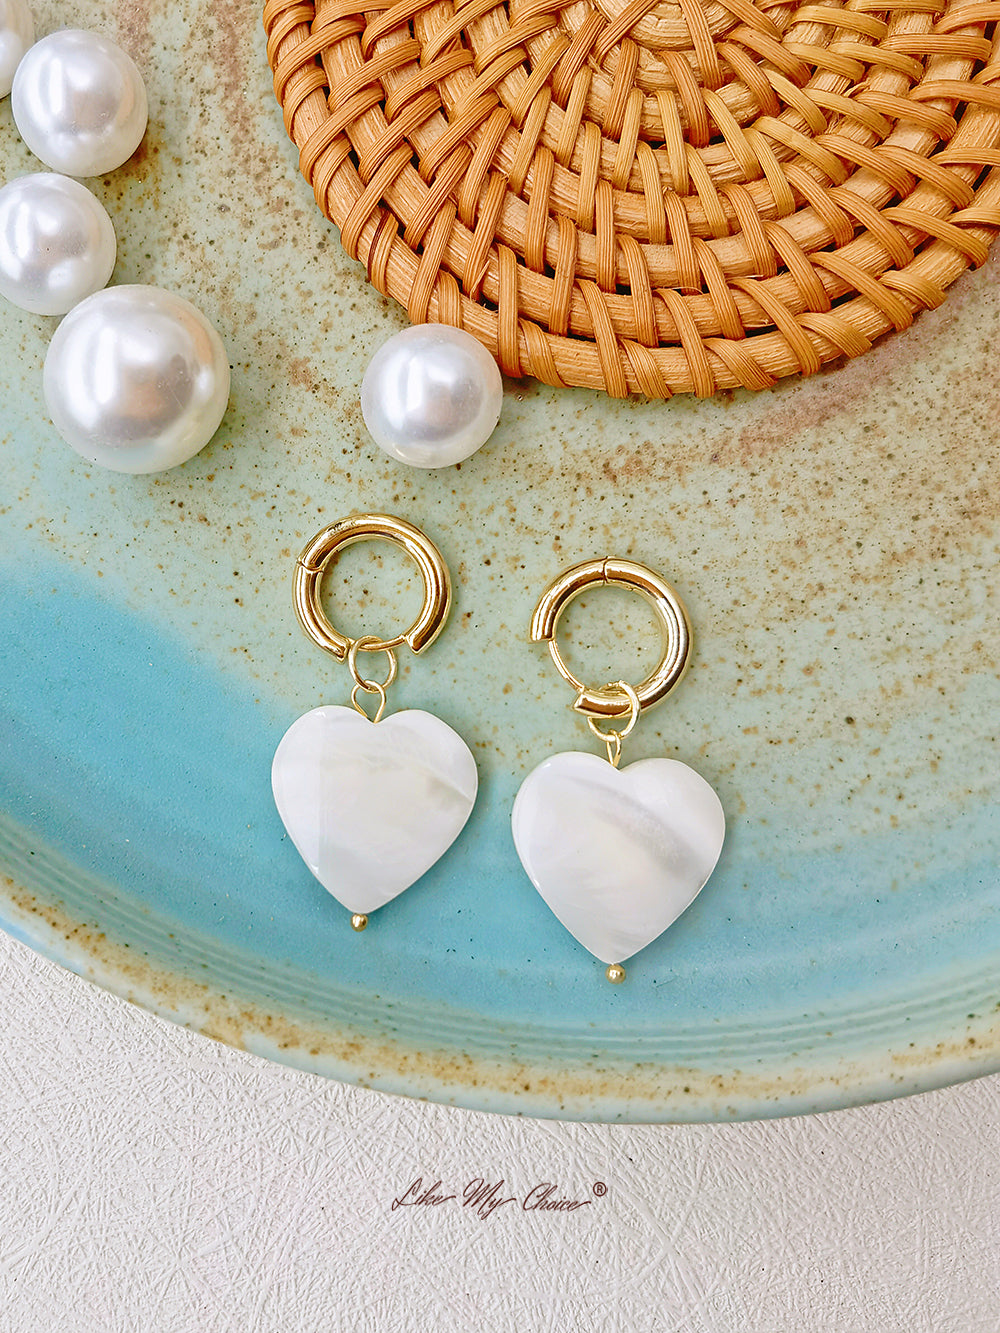 Kolczyki w kształcie serca w stylu vintage z perłami słodkowodnymi i kamieniami szlachetnymi: proste i eleganckie